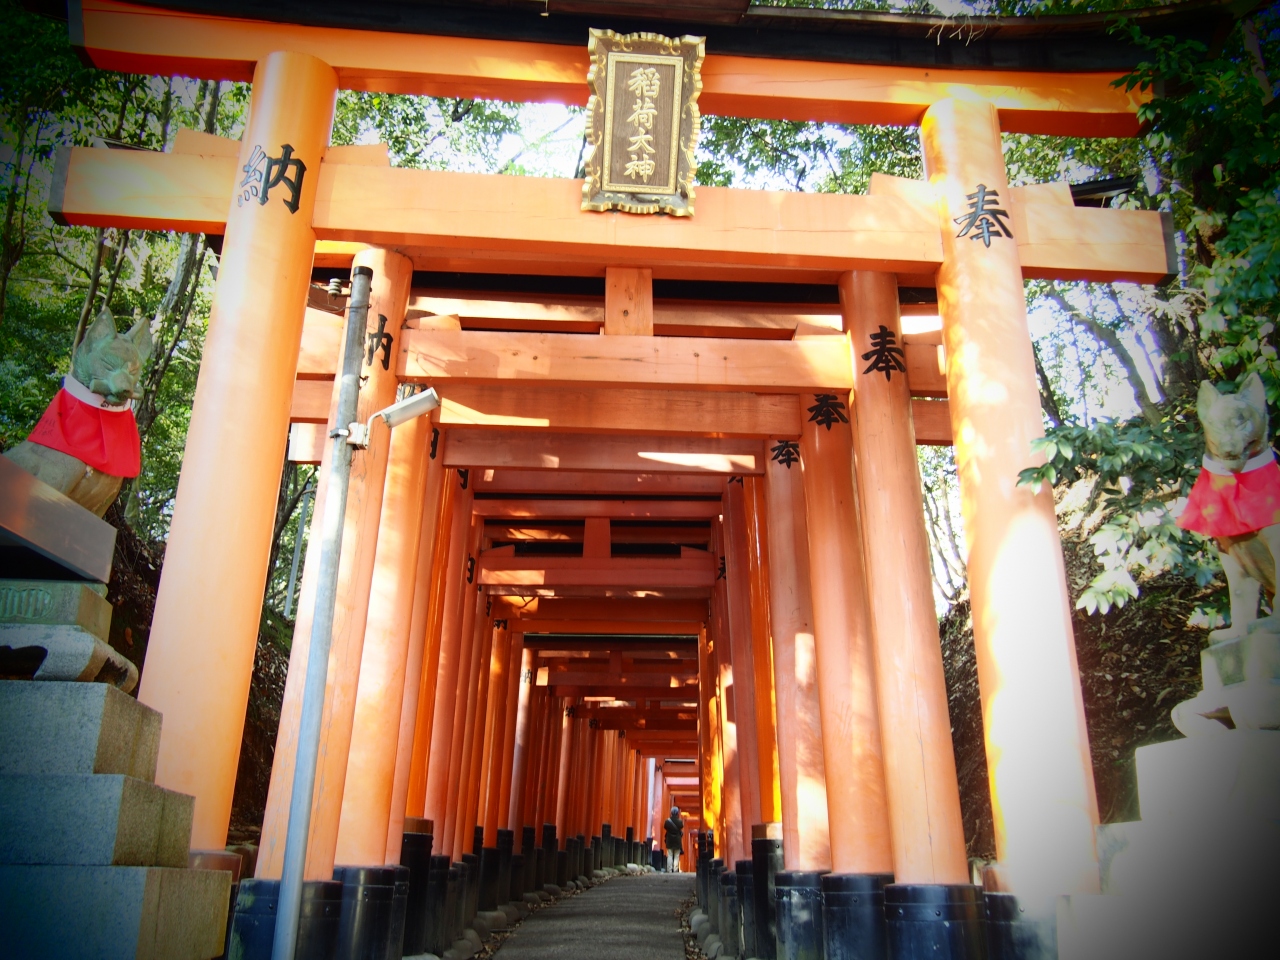 伏見稲荷を歩く 伏見 京都 の旅行記 ブログ By Uriepさん フォートラベル